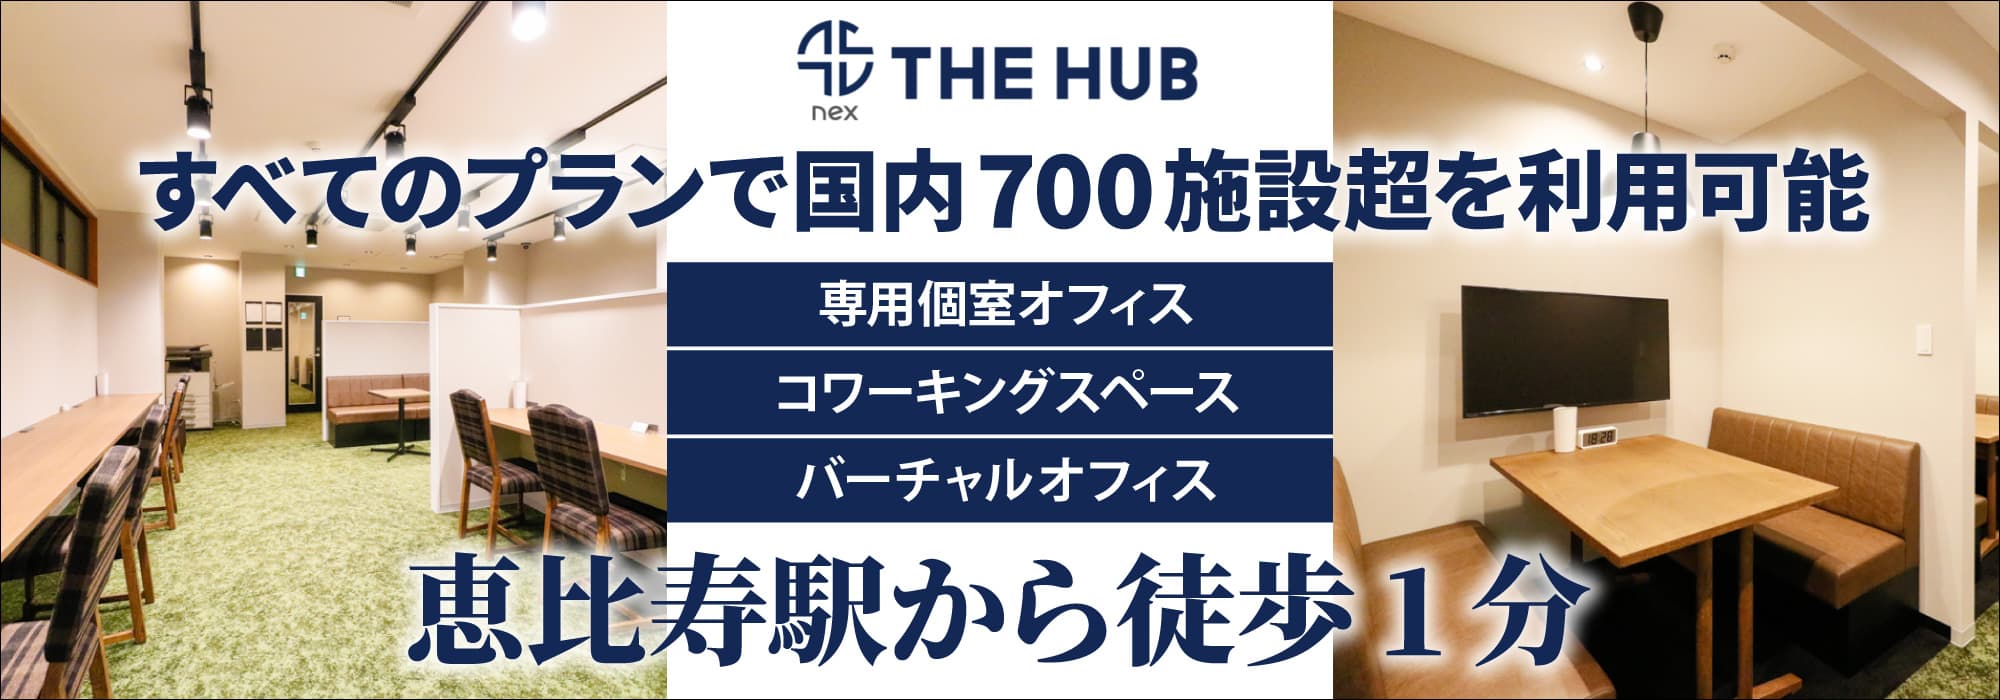 恵比寿駅から徒歩１分、創造力と生産性を刺激するレンタルオフィス【THE HUB 恵比寿】すべてのプランで国内700施設超を利用可能